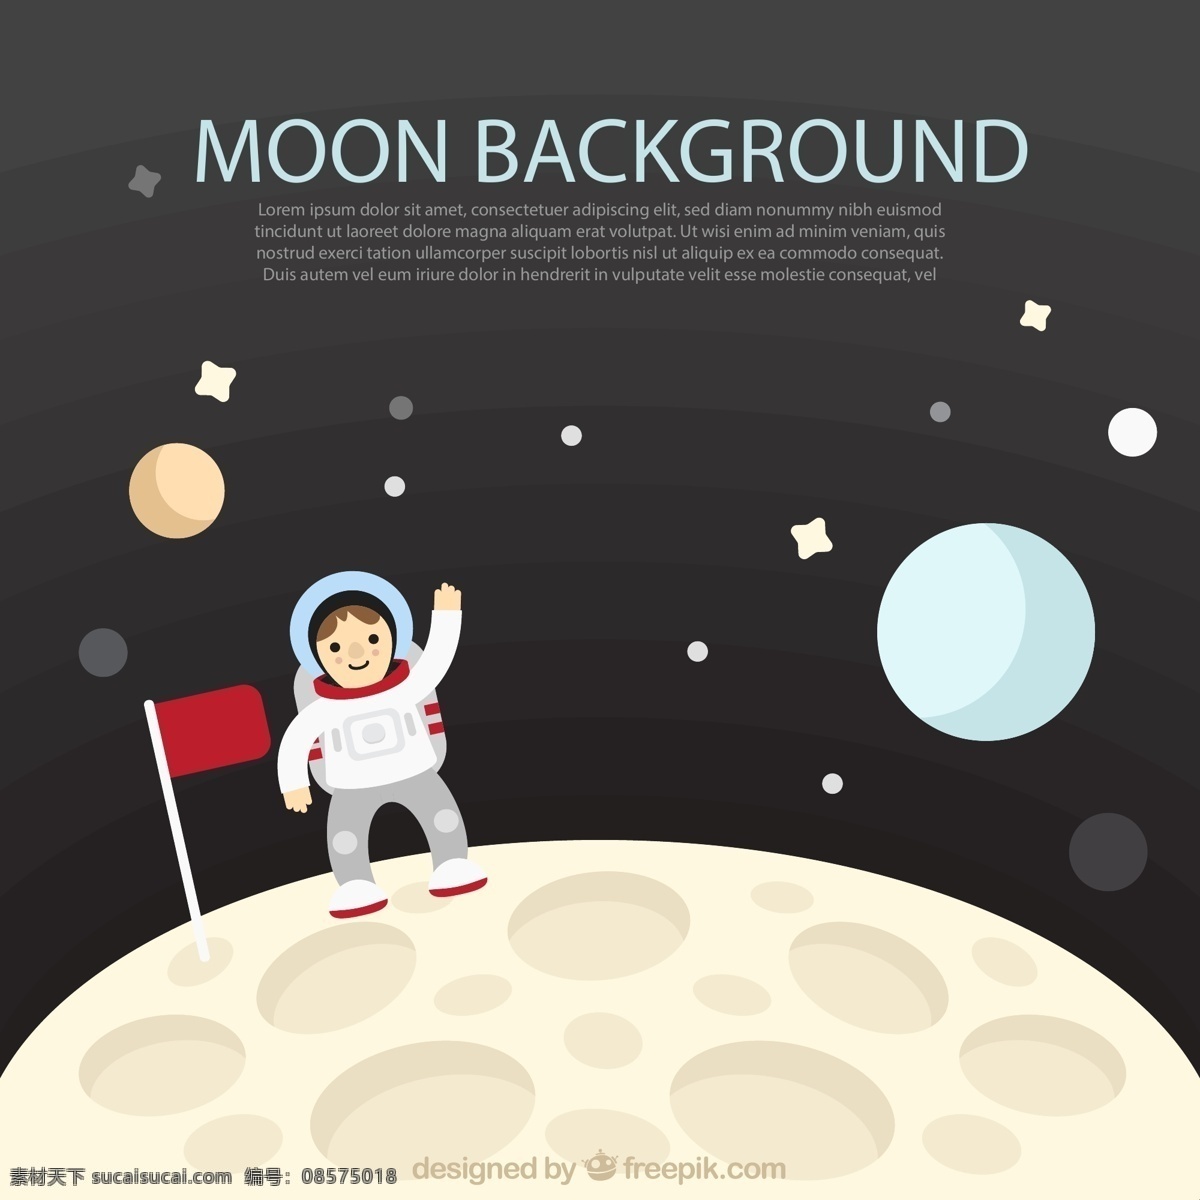 可爱 登月 宇航员 旗子 宇宙 月球 矢量图 矢量 高清图片